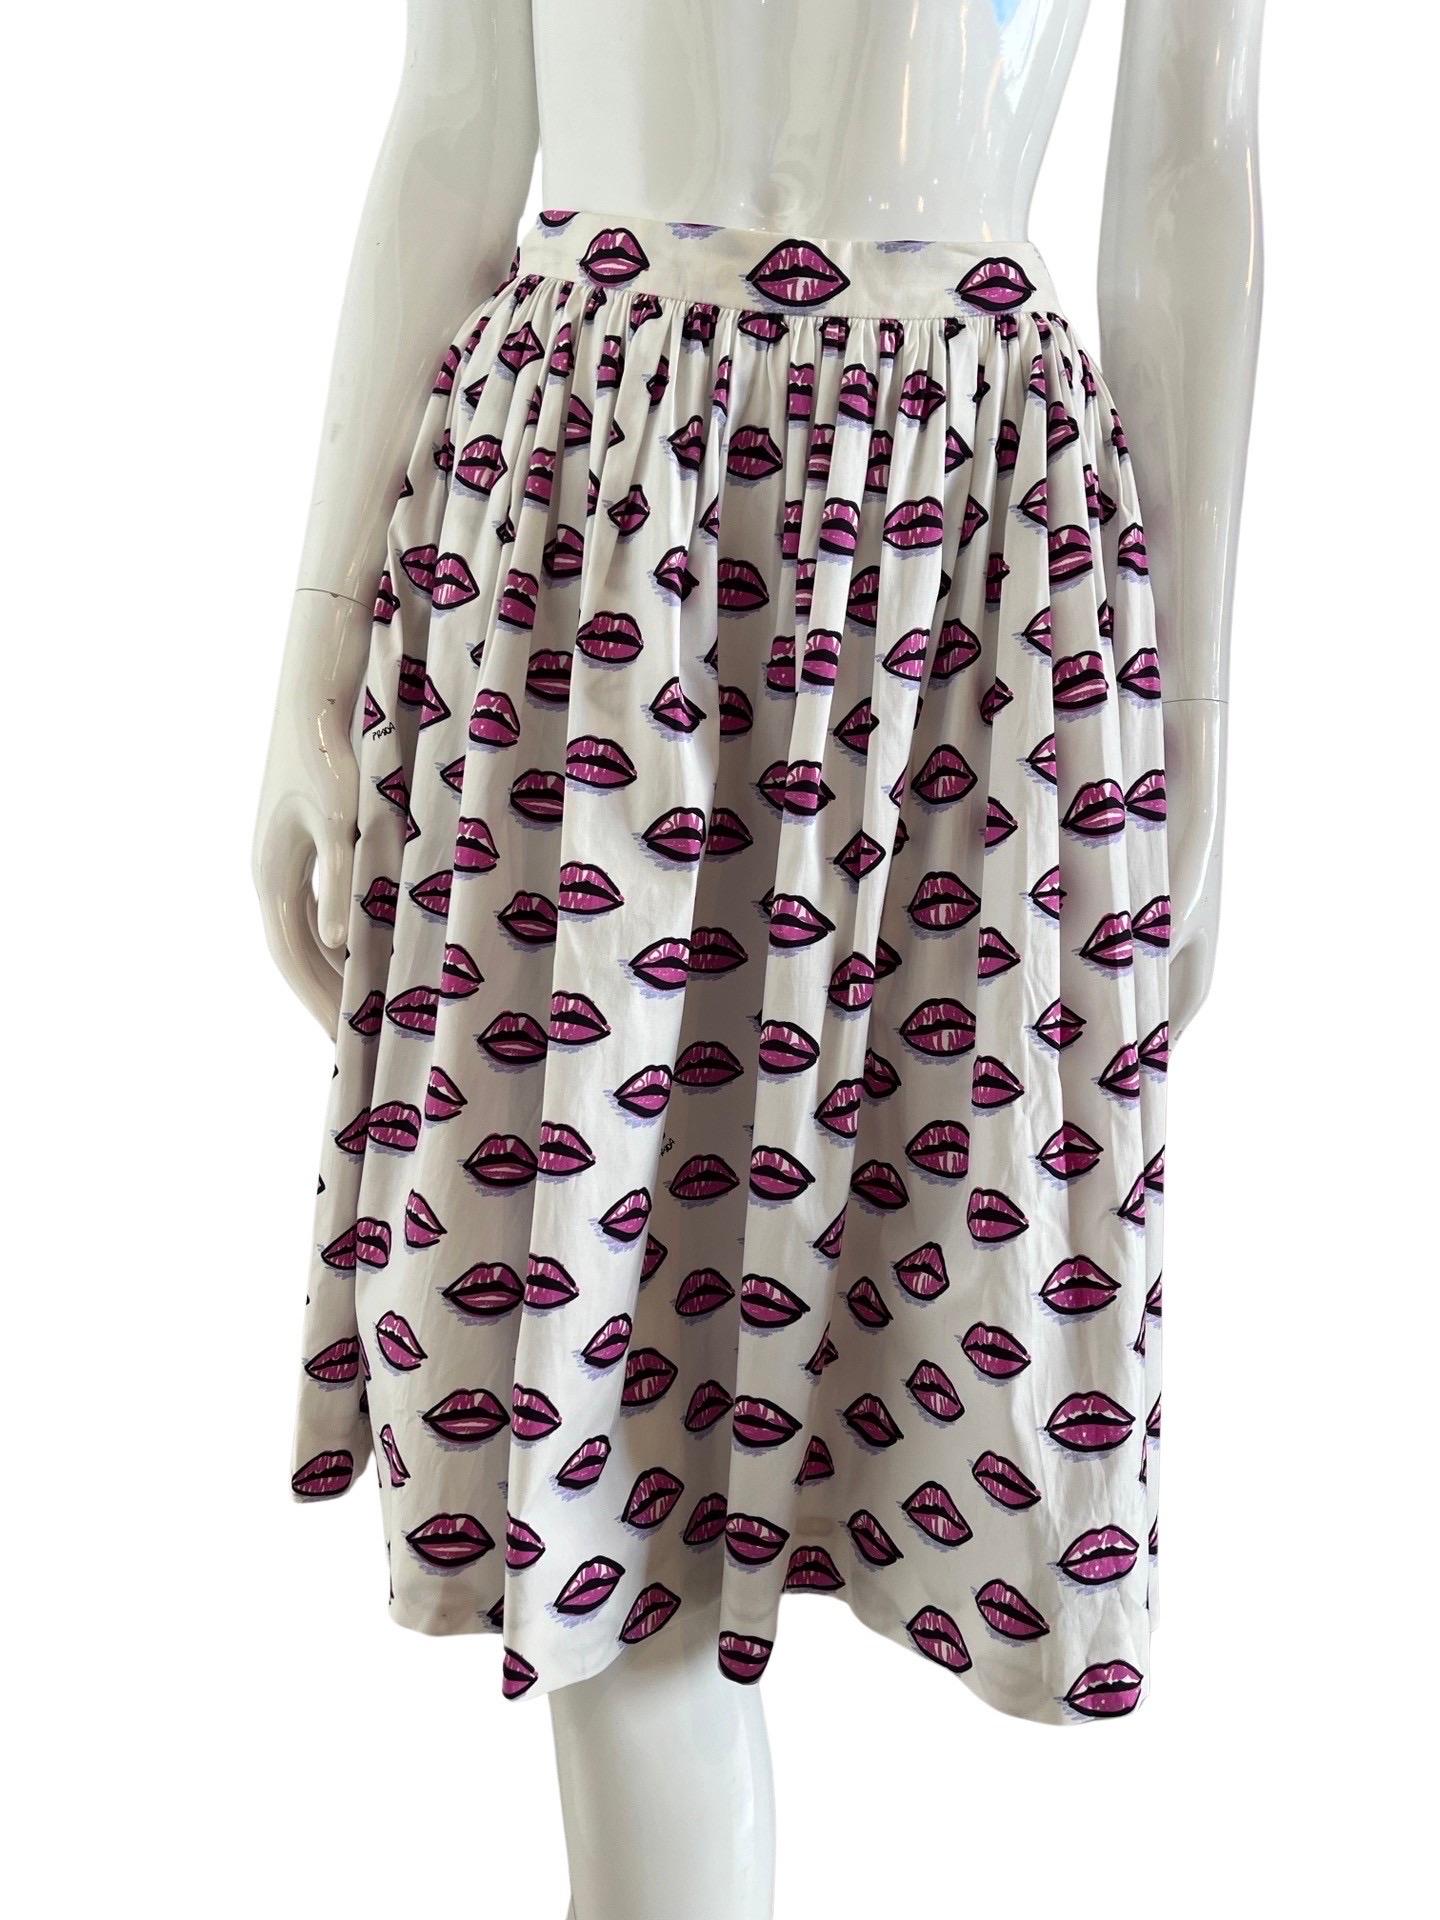 2017 Prada Iconic Lip Print Full Skirt For Sale 4